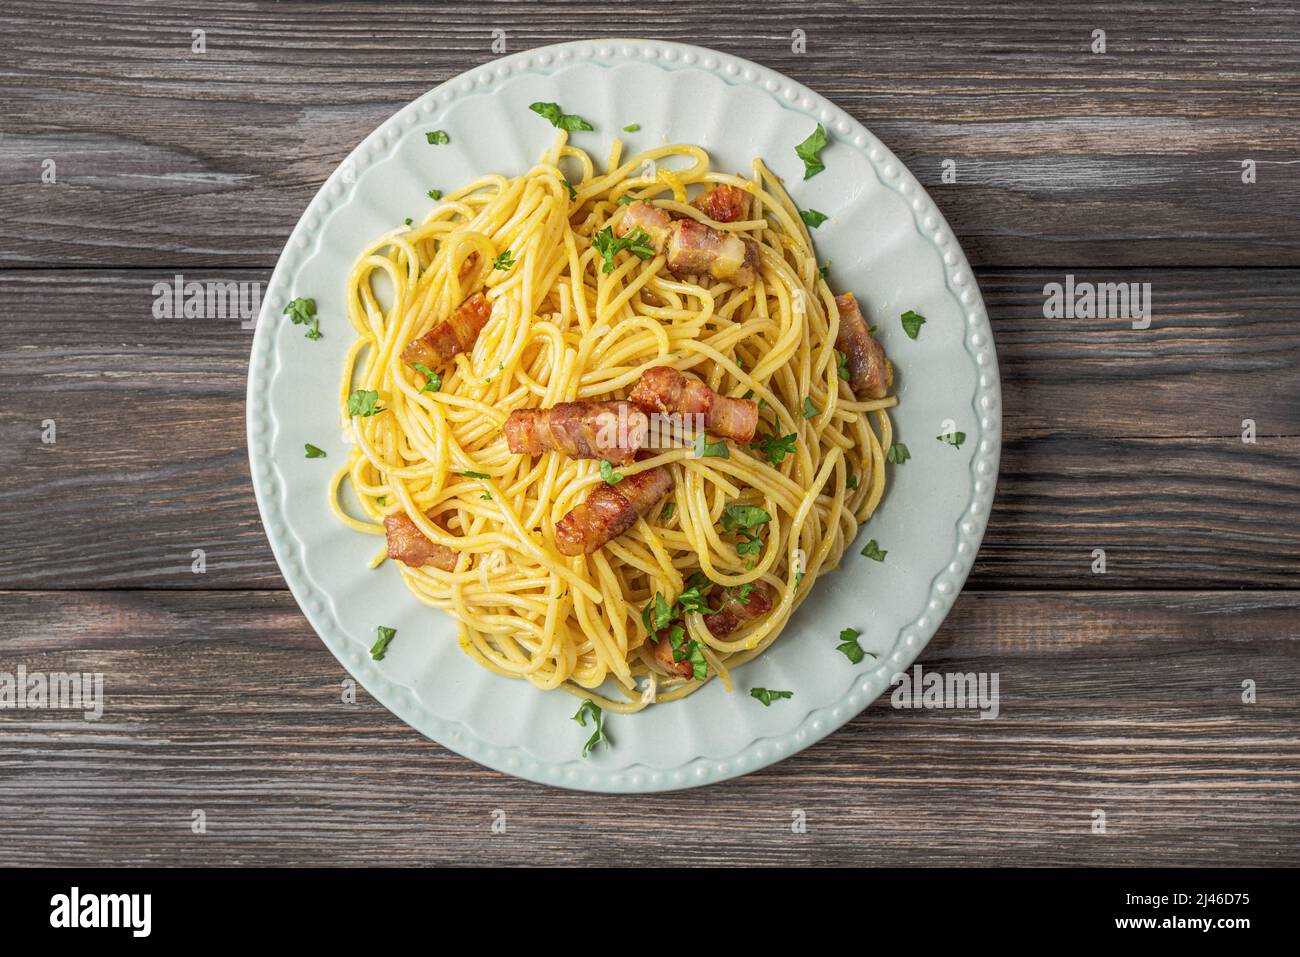 Klassische hausgemachte Pasta Carbonara mit Spaghetti, Pancetta, Ei, Parmesankäse und Sahnesauce auf Holztisch. Italienisches Essen, Blick von oben Stockfoto